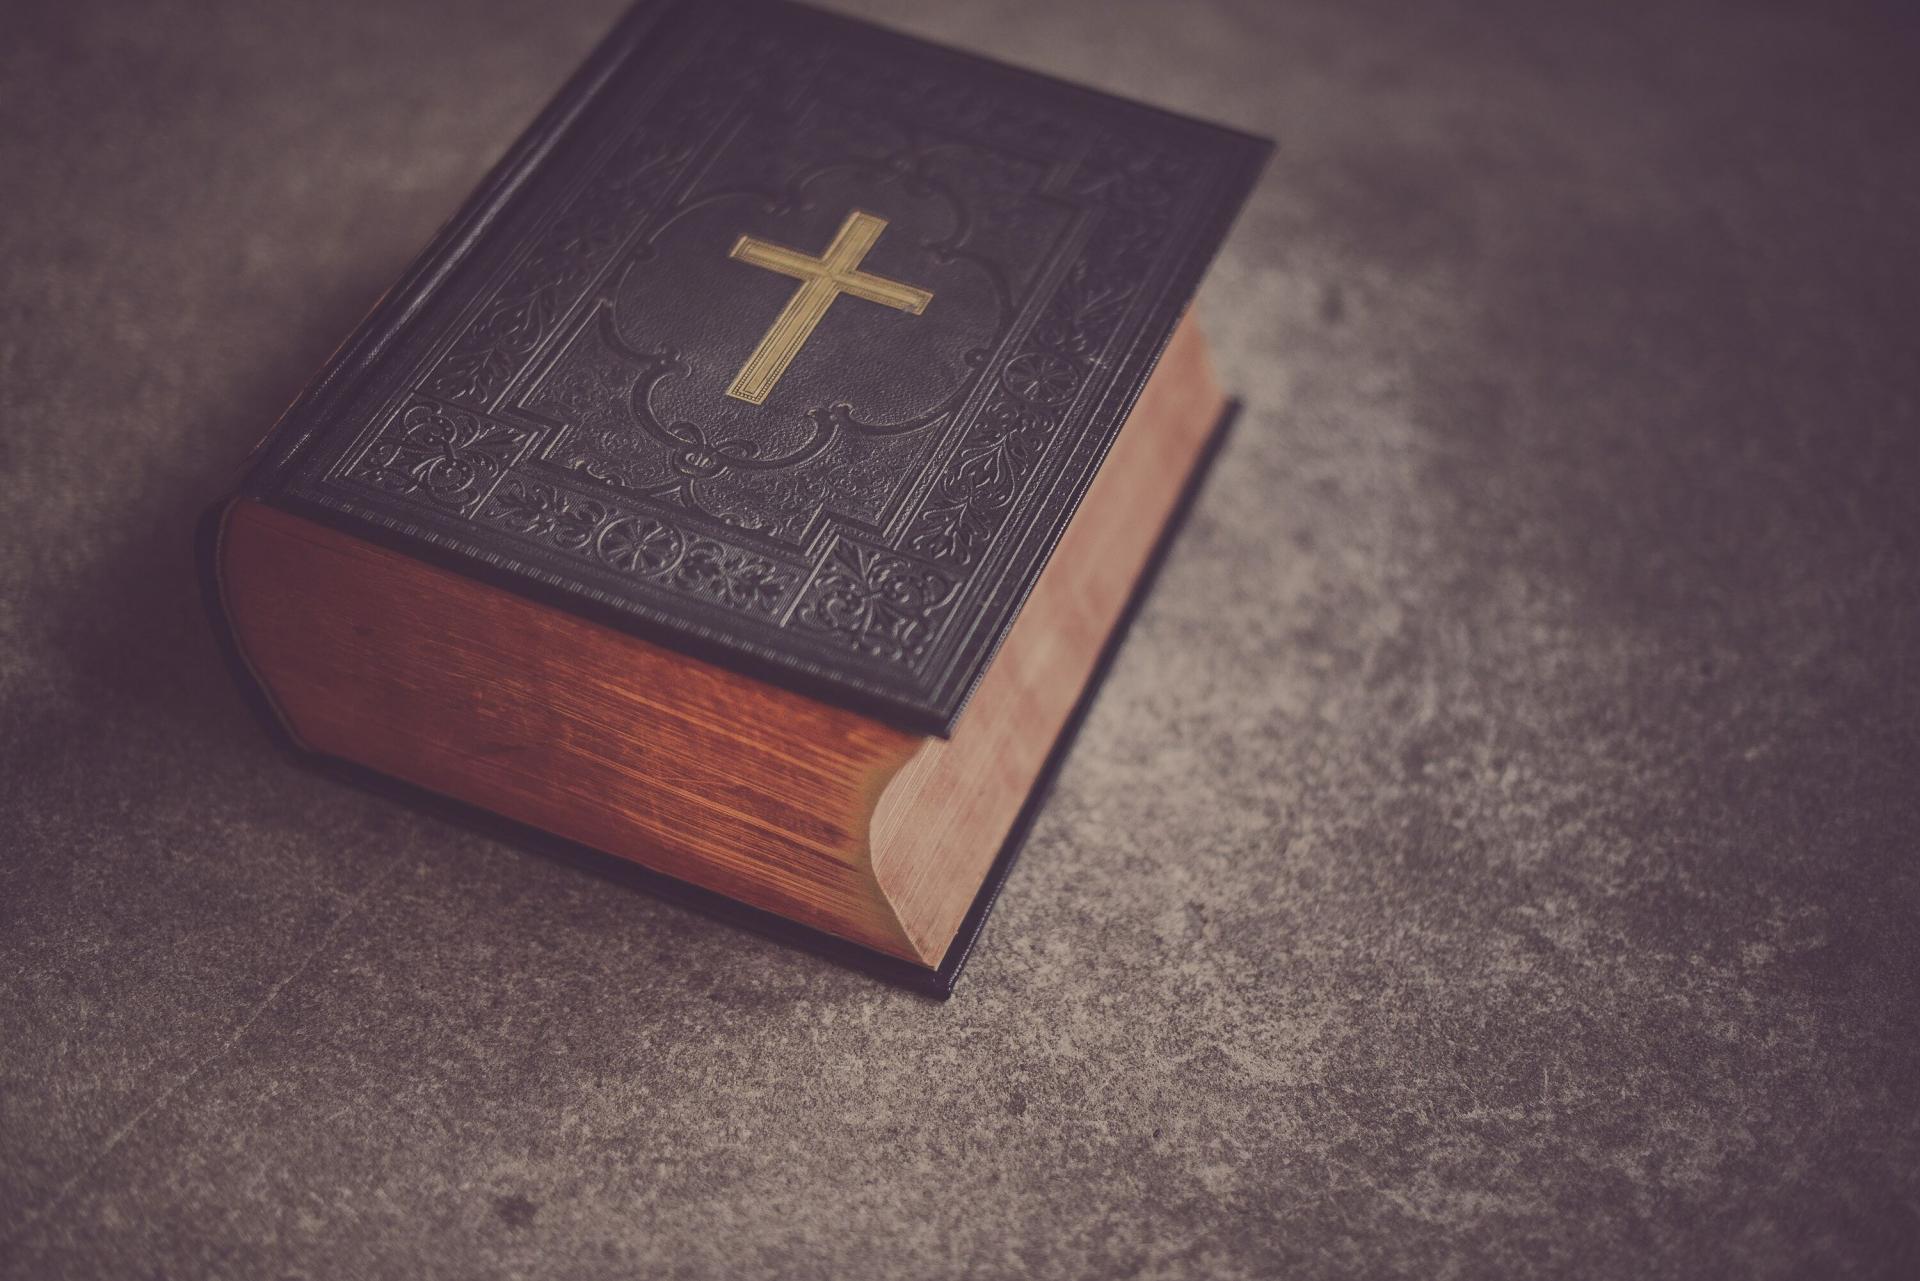 Niekoľko základných škôl v americkom Utahu zakázalo Bibliu kvôli 